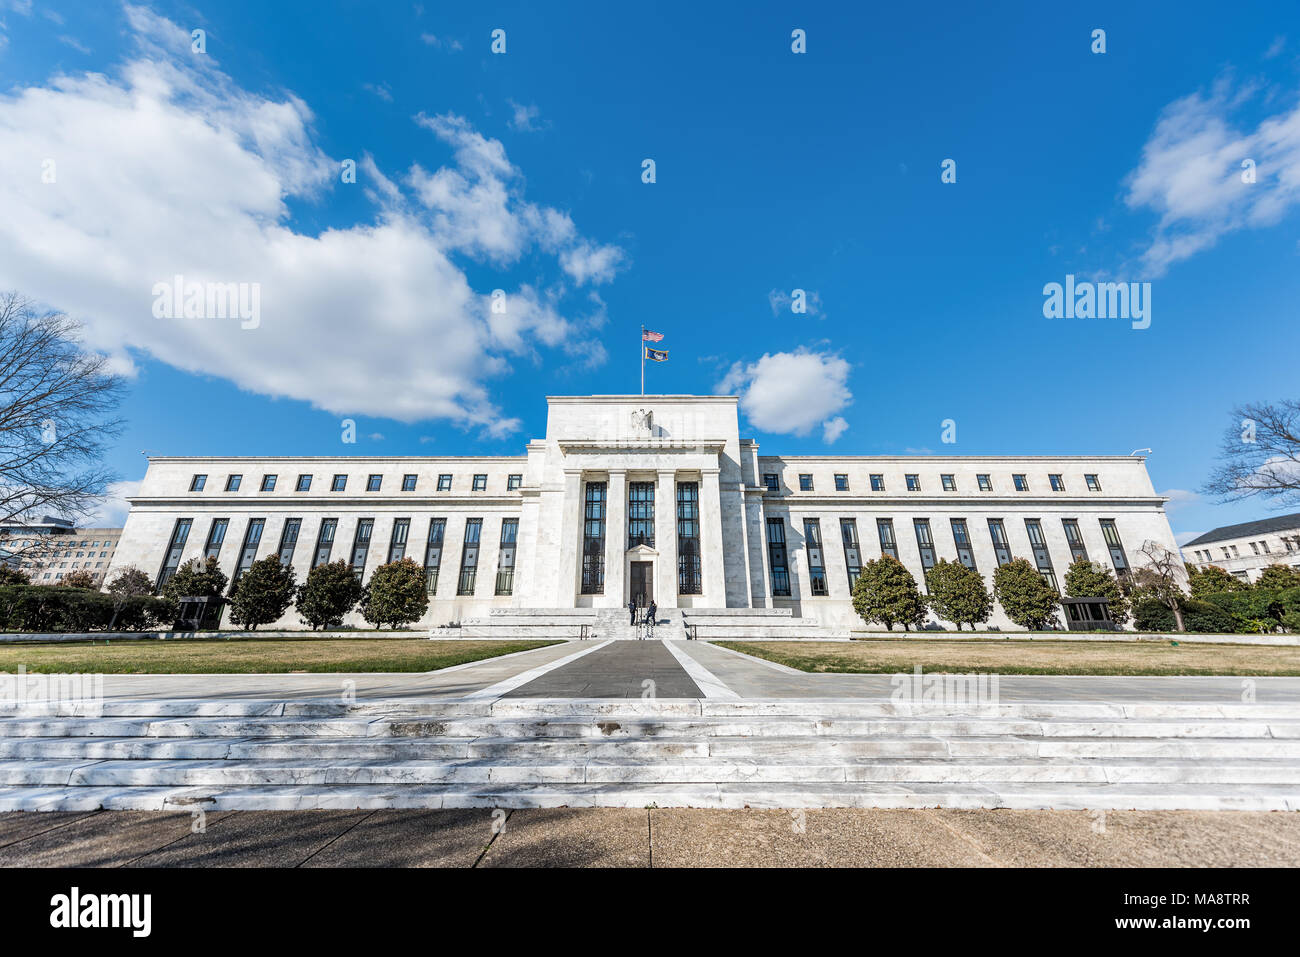 Washington DC, USA - 9. März 2018: die Federal Reserve Bank Eingang Weitwinkel Architektur Gebäude wand Sicherheit Schutz Türen, Pfad, amerikanische Flaggen, bl Stockfoto